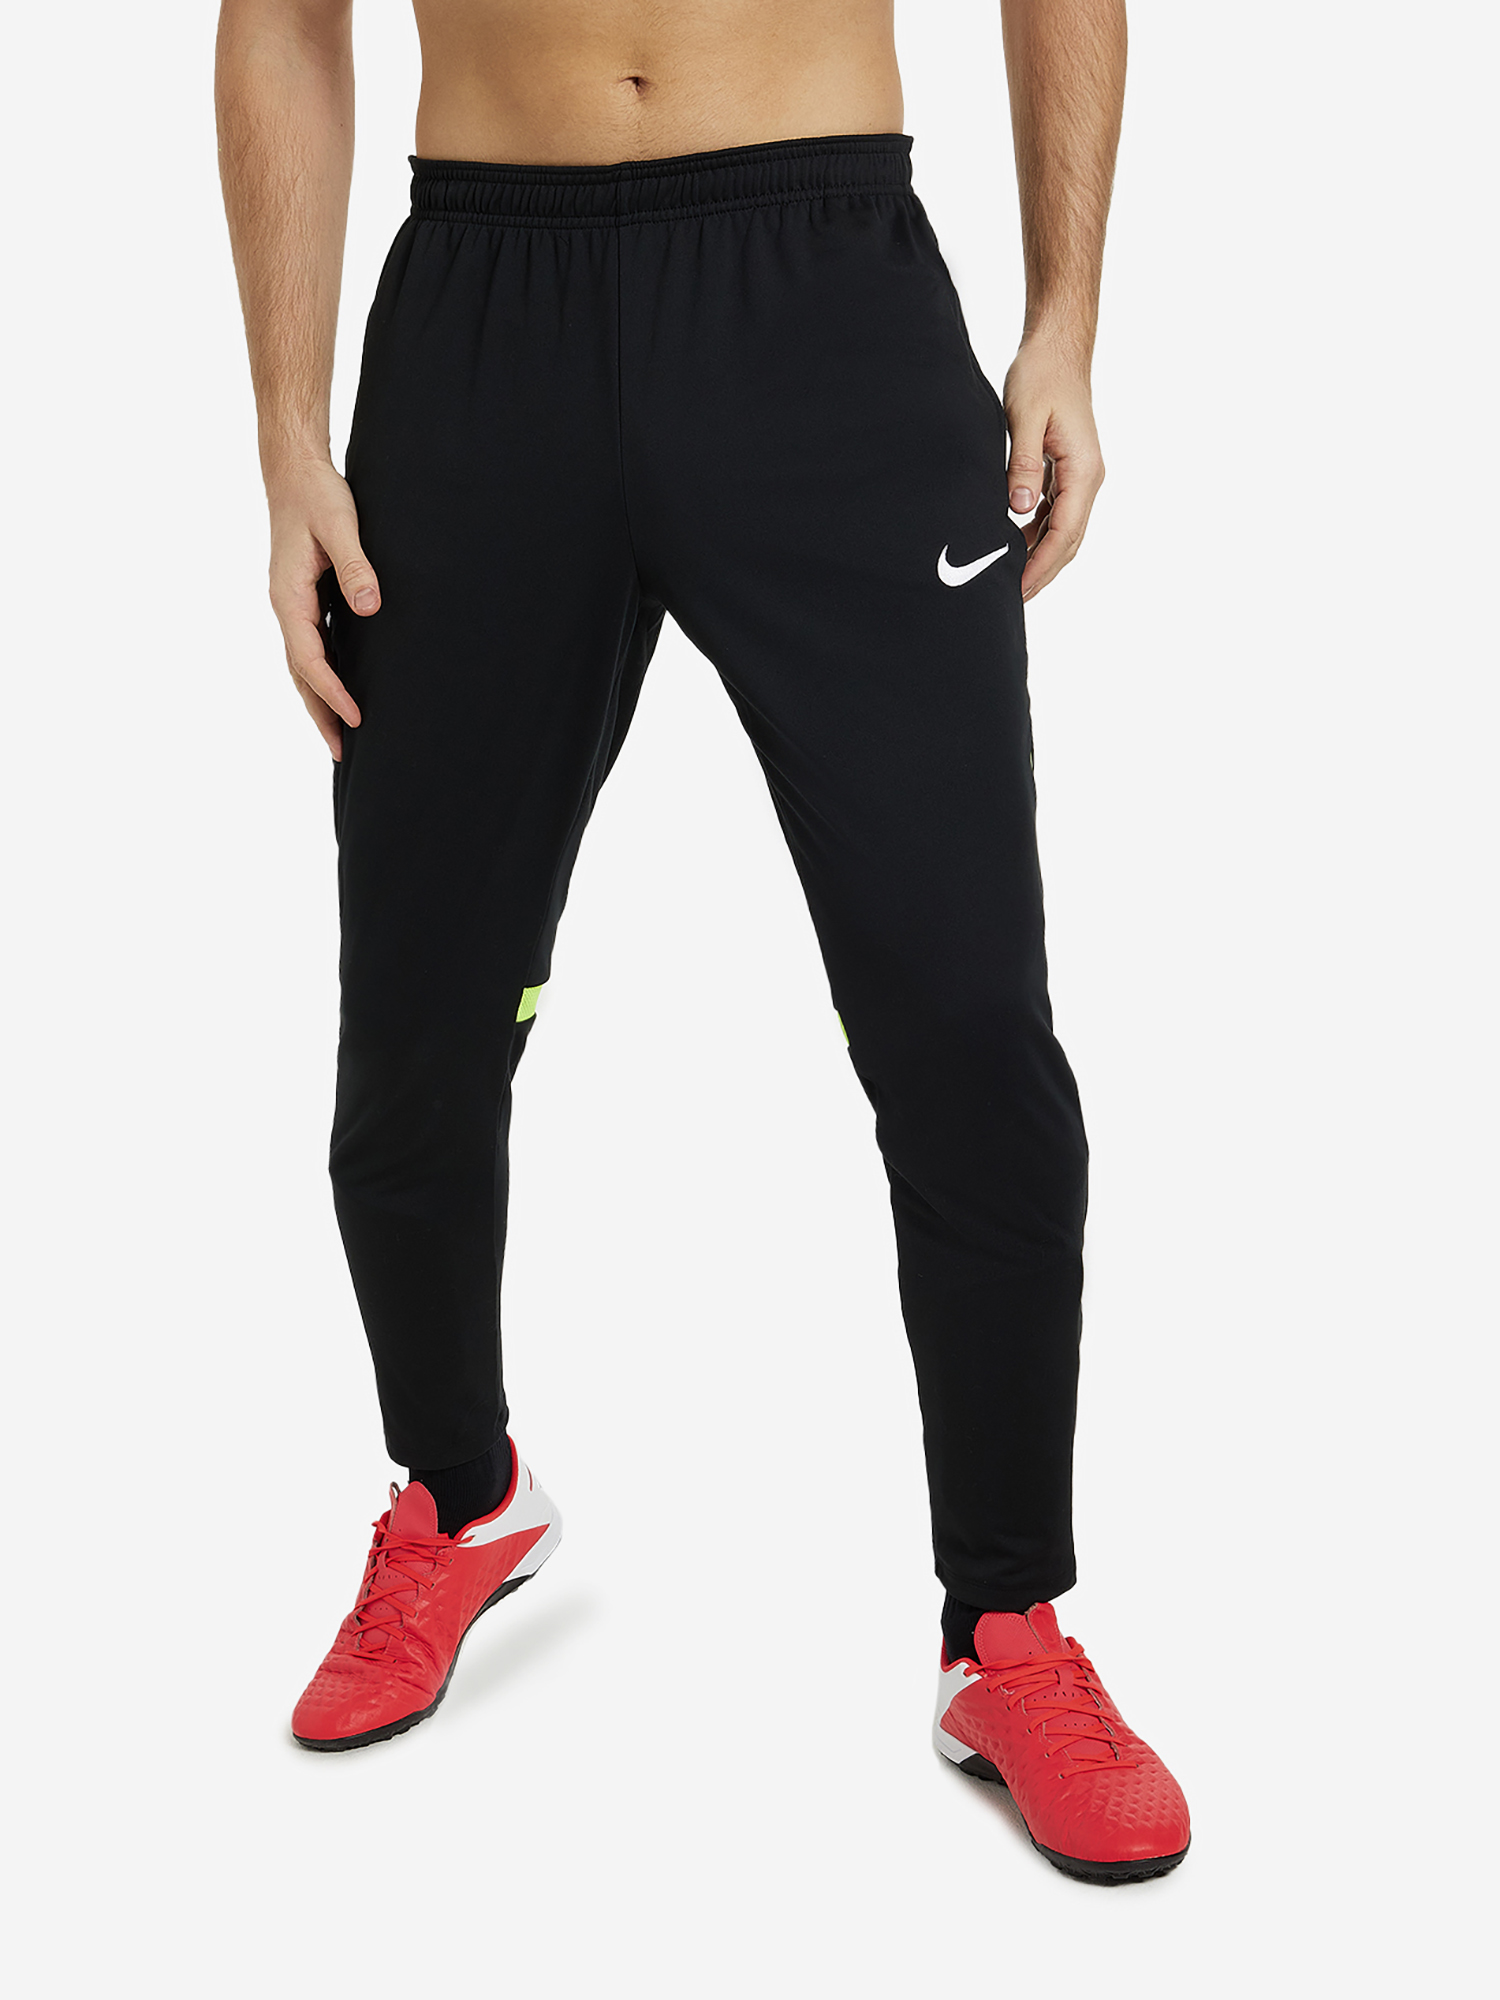 Брюки мужские Nike Training Academy Pro, Черный брюки для мальчиков nike kids training pant academy 21 мульти